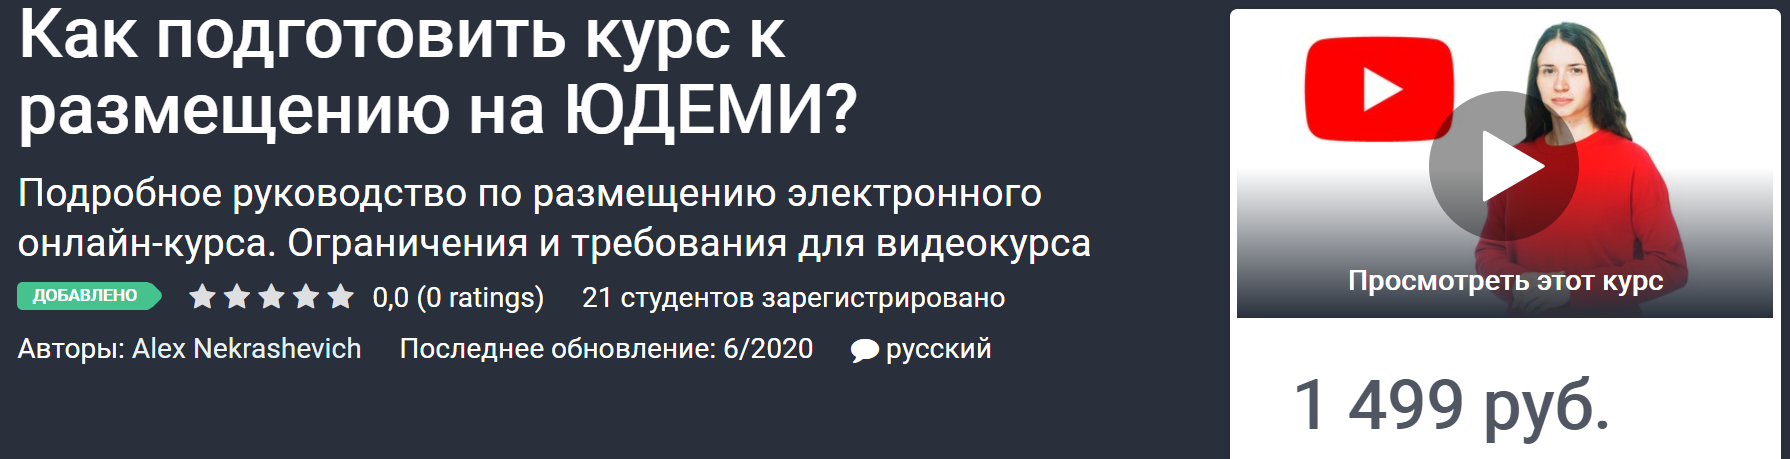 udemy-kak-podgotovit-kurs-k-razmescheniju-na-judemi-2020-alex-nekrashevich-png.2040